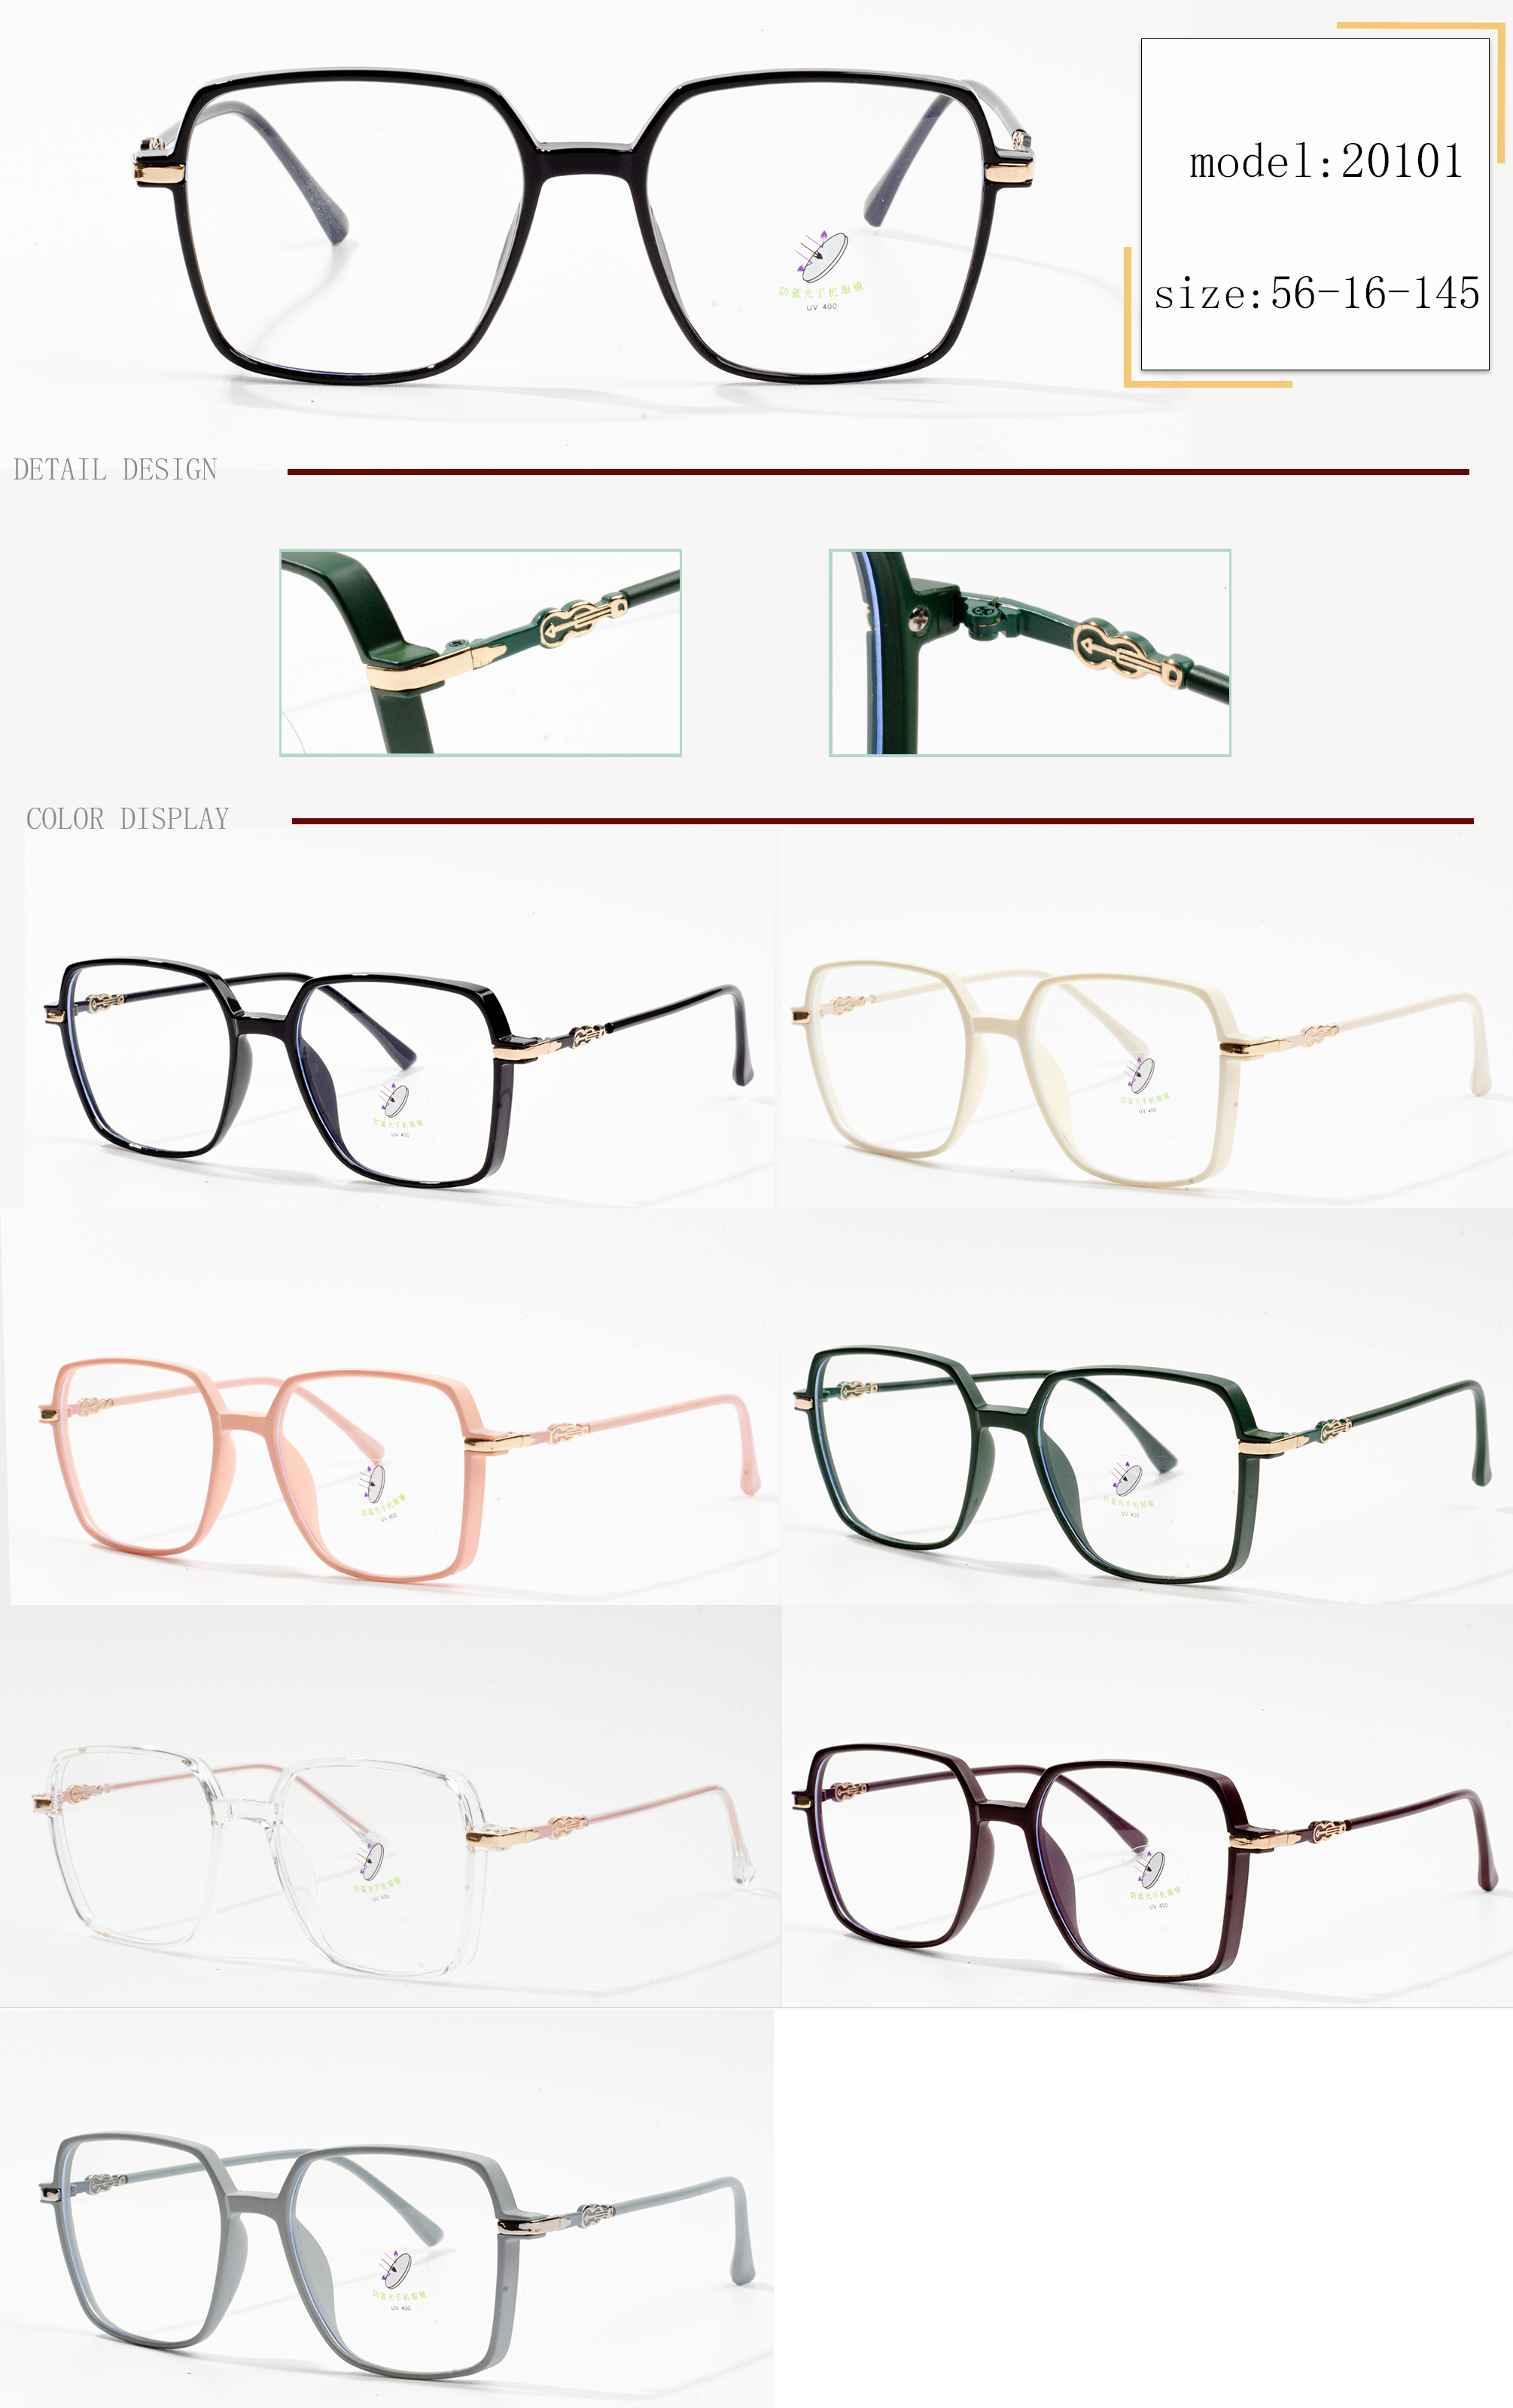 populære brilleinnfatninger